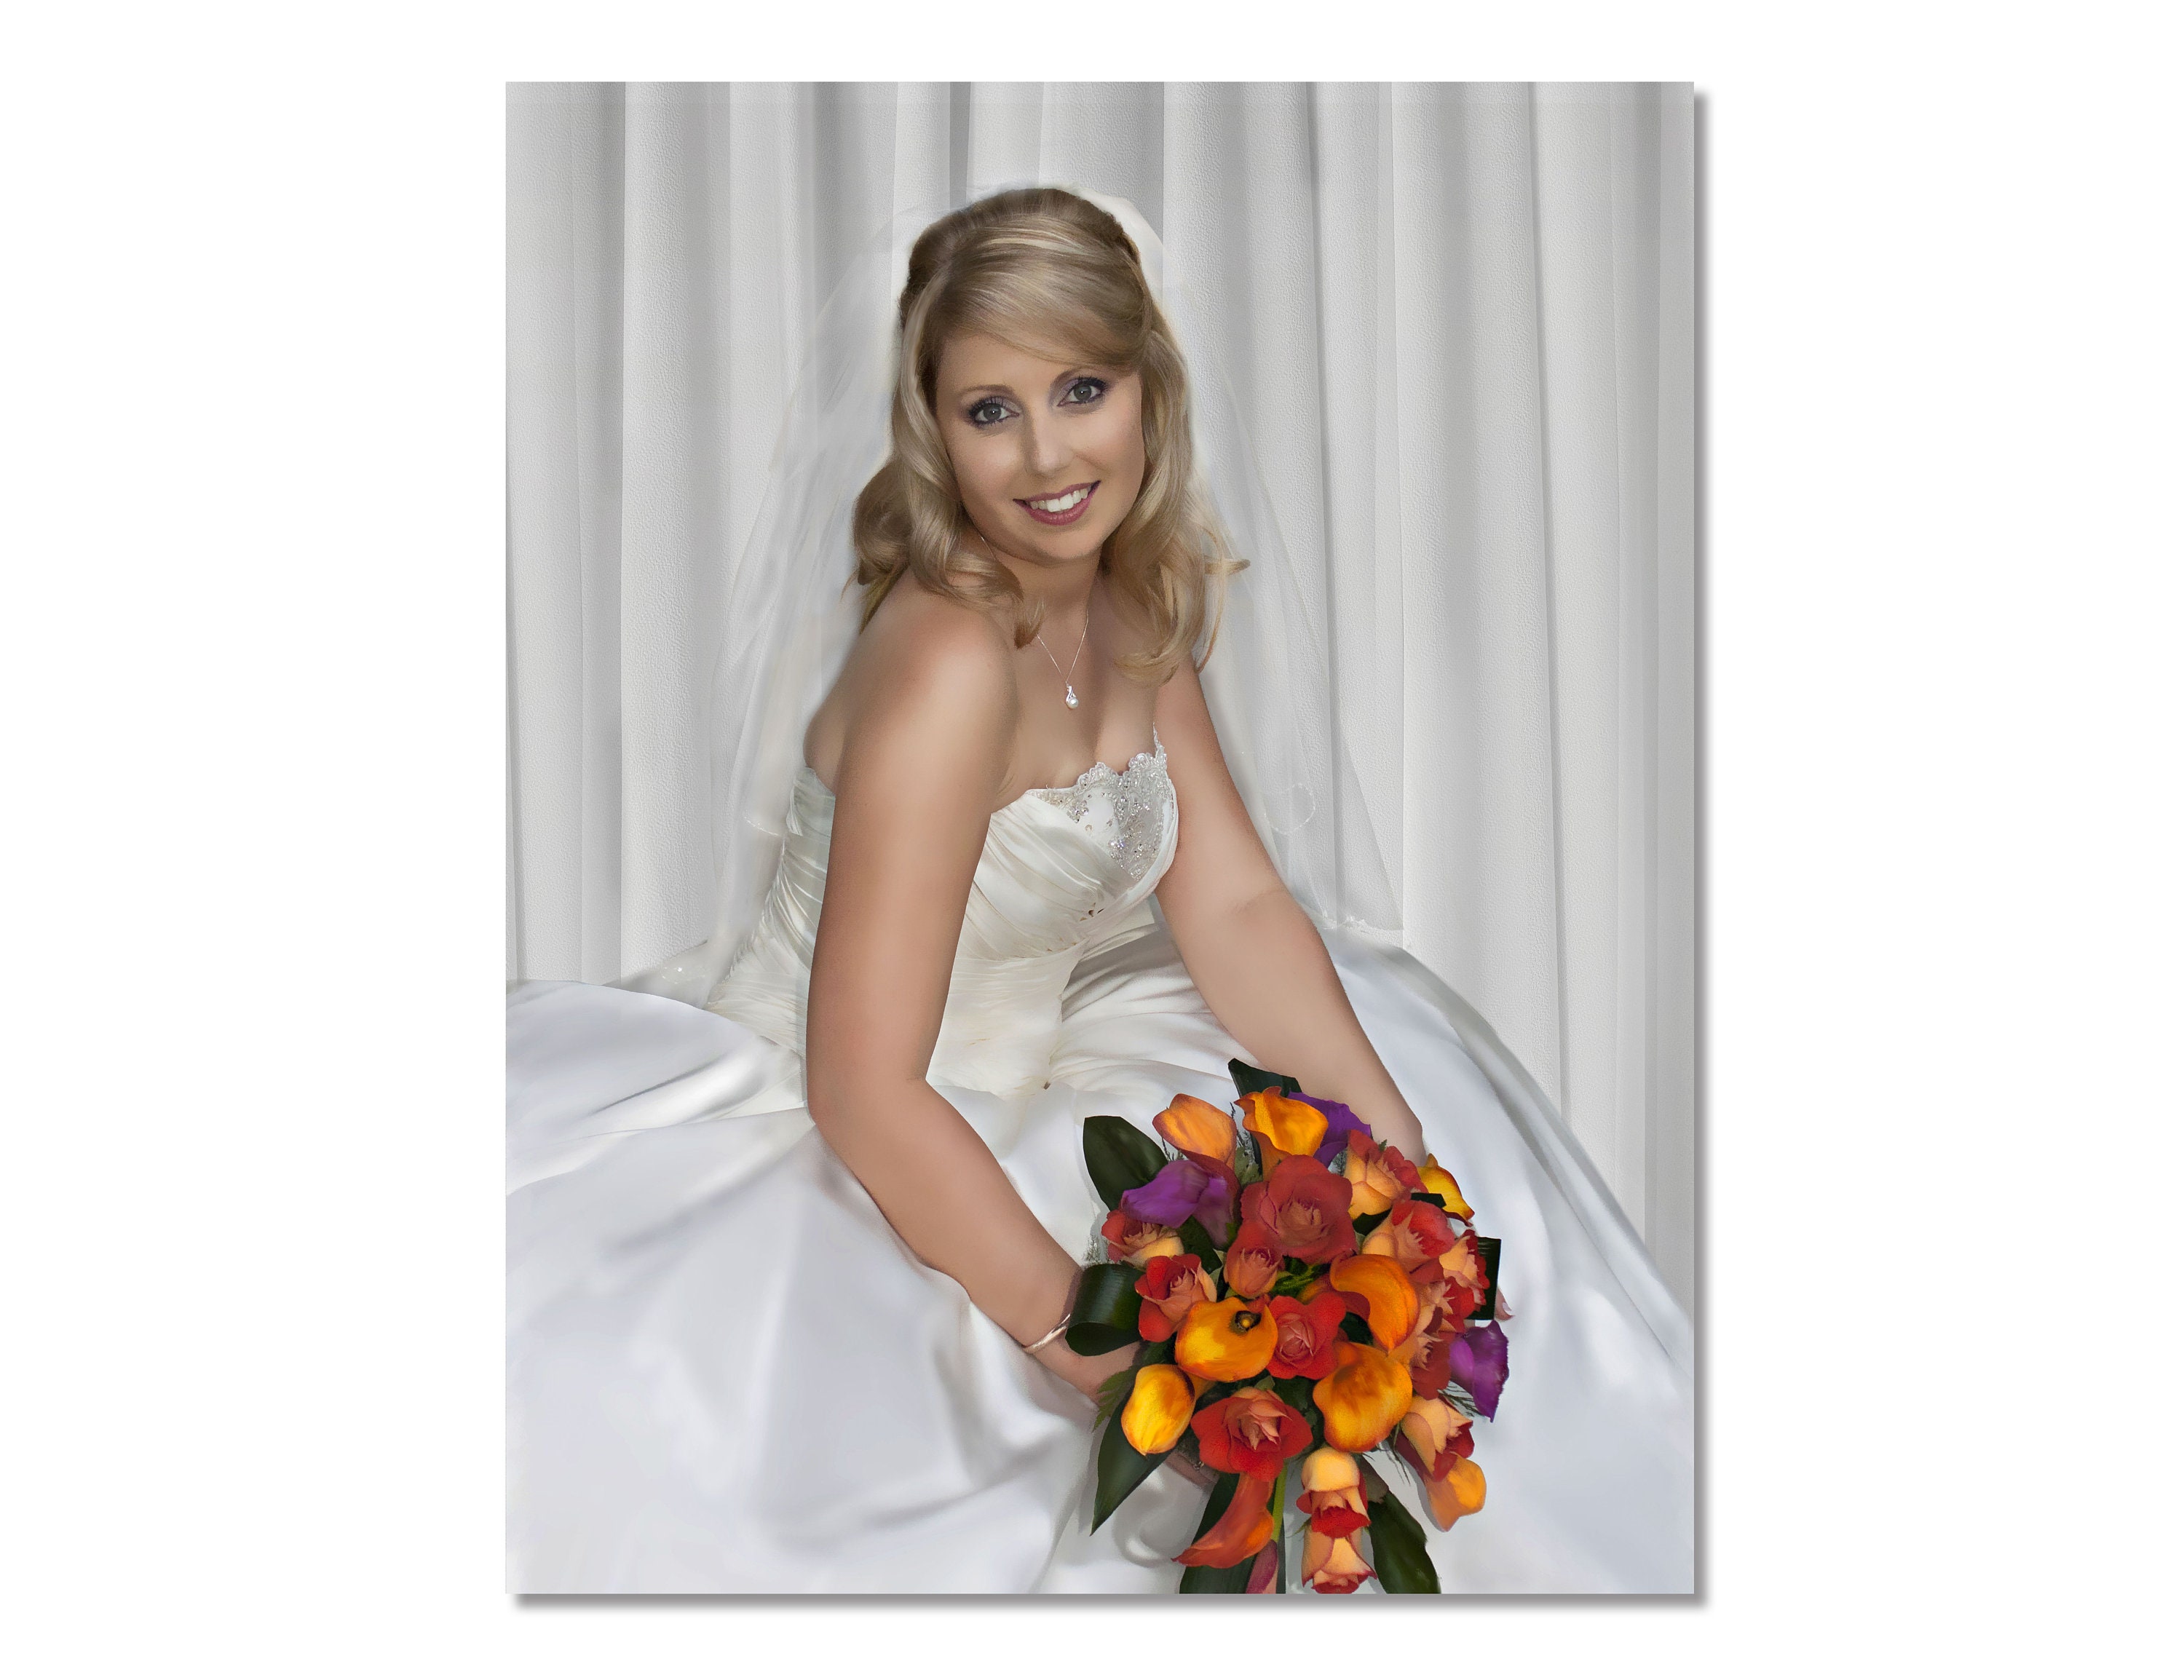 Wedding Photo Editing Photoshop My Wedding Photo Background - Etsy Australia